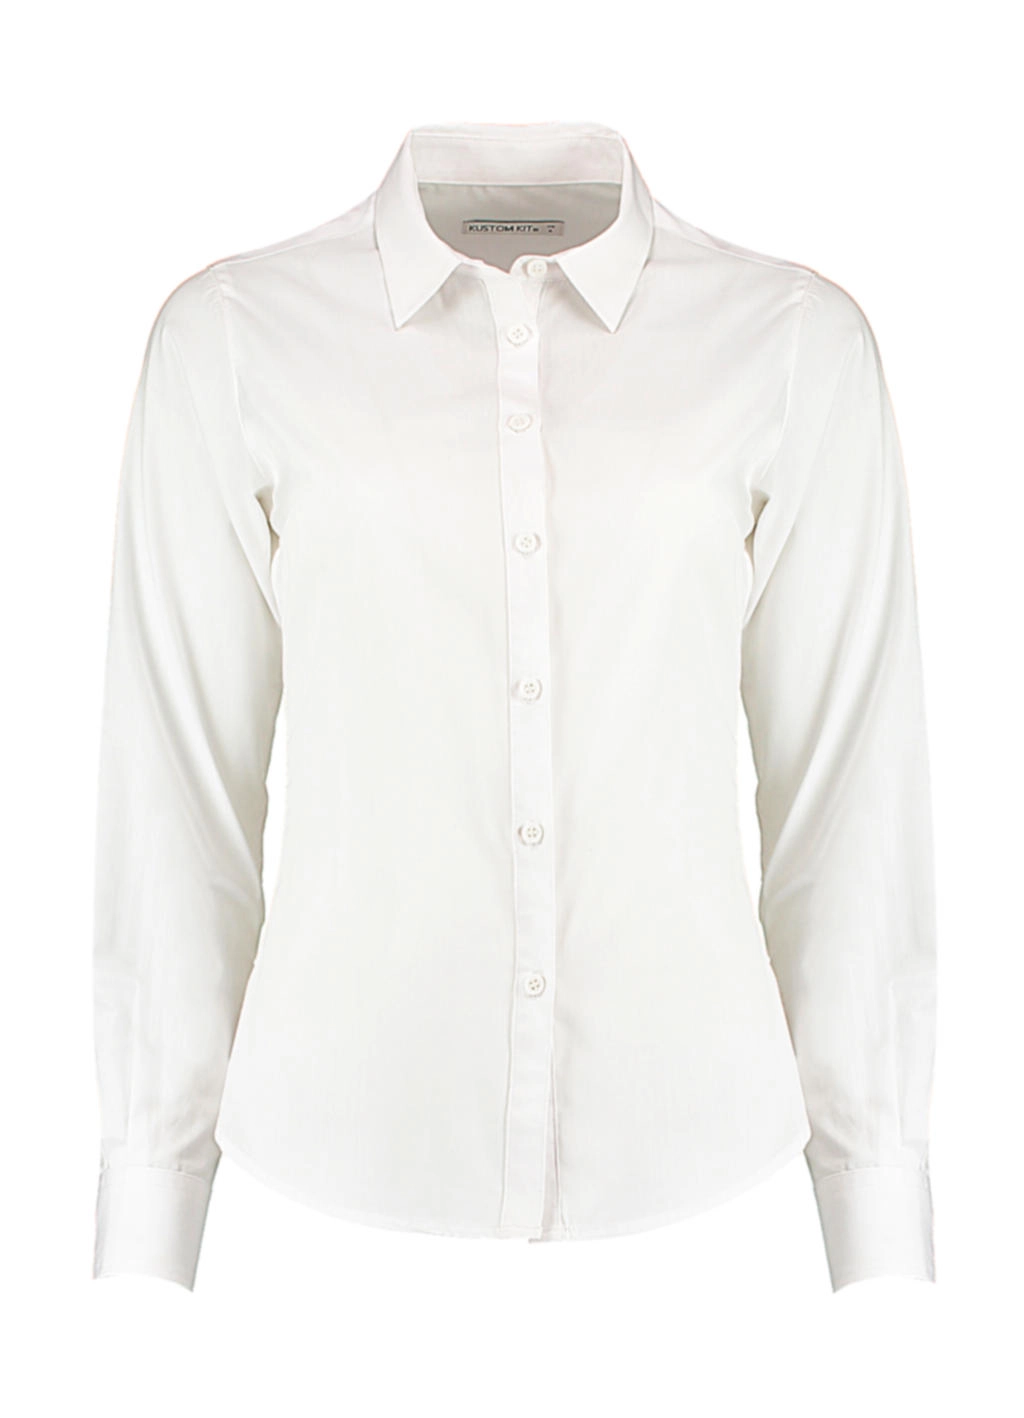 Women`s Tailored Fit Poplin Shirt zum Besticken und Bedrucken in der Farbe White mit Ihren Logo, Schriftzug oder Motiv.